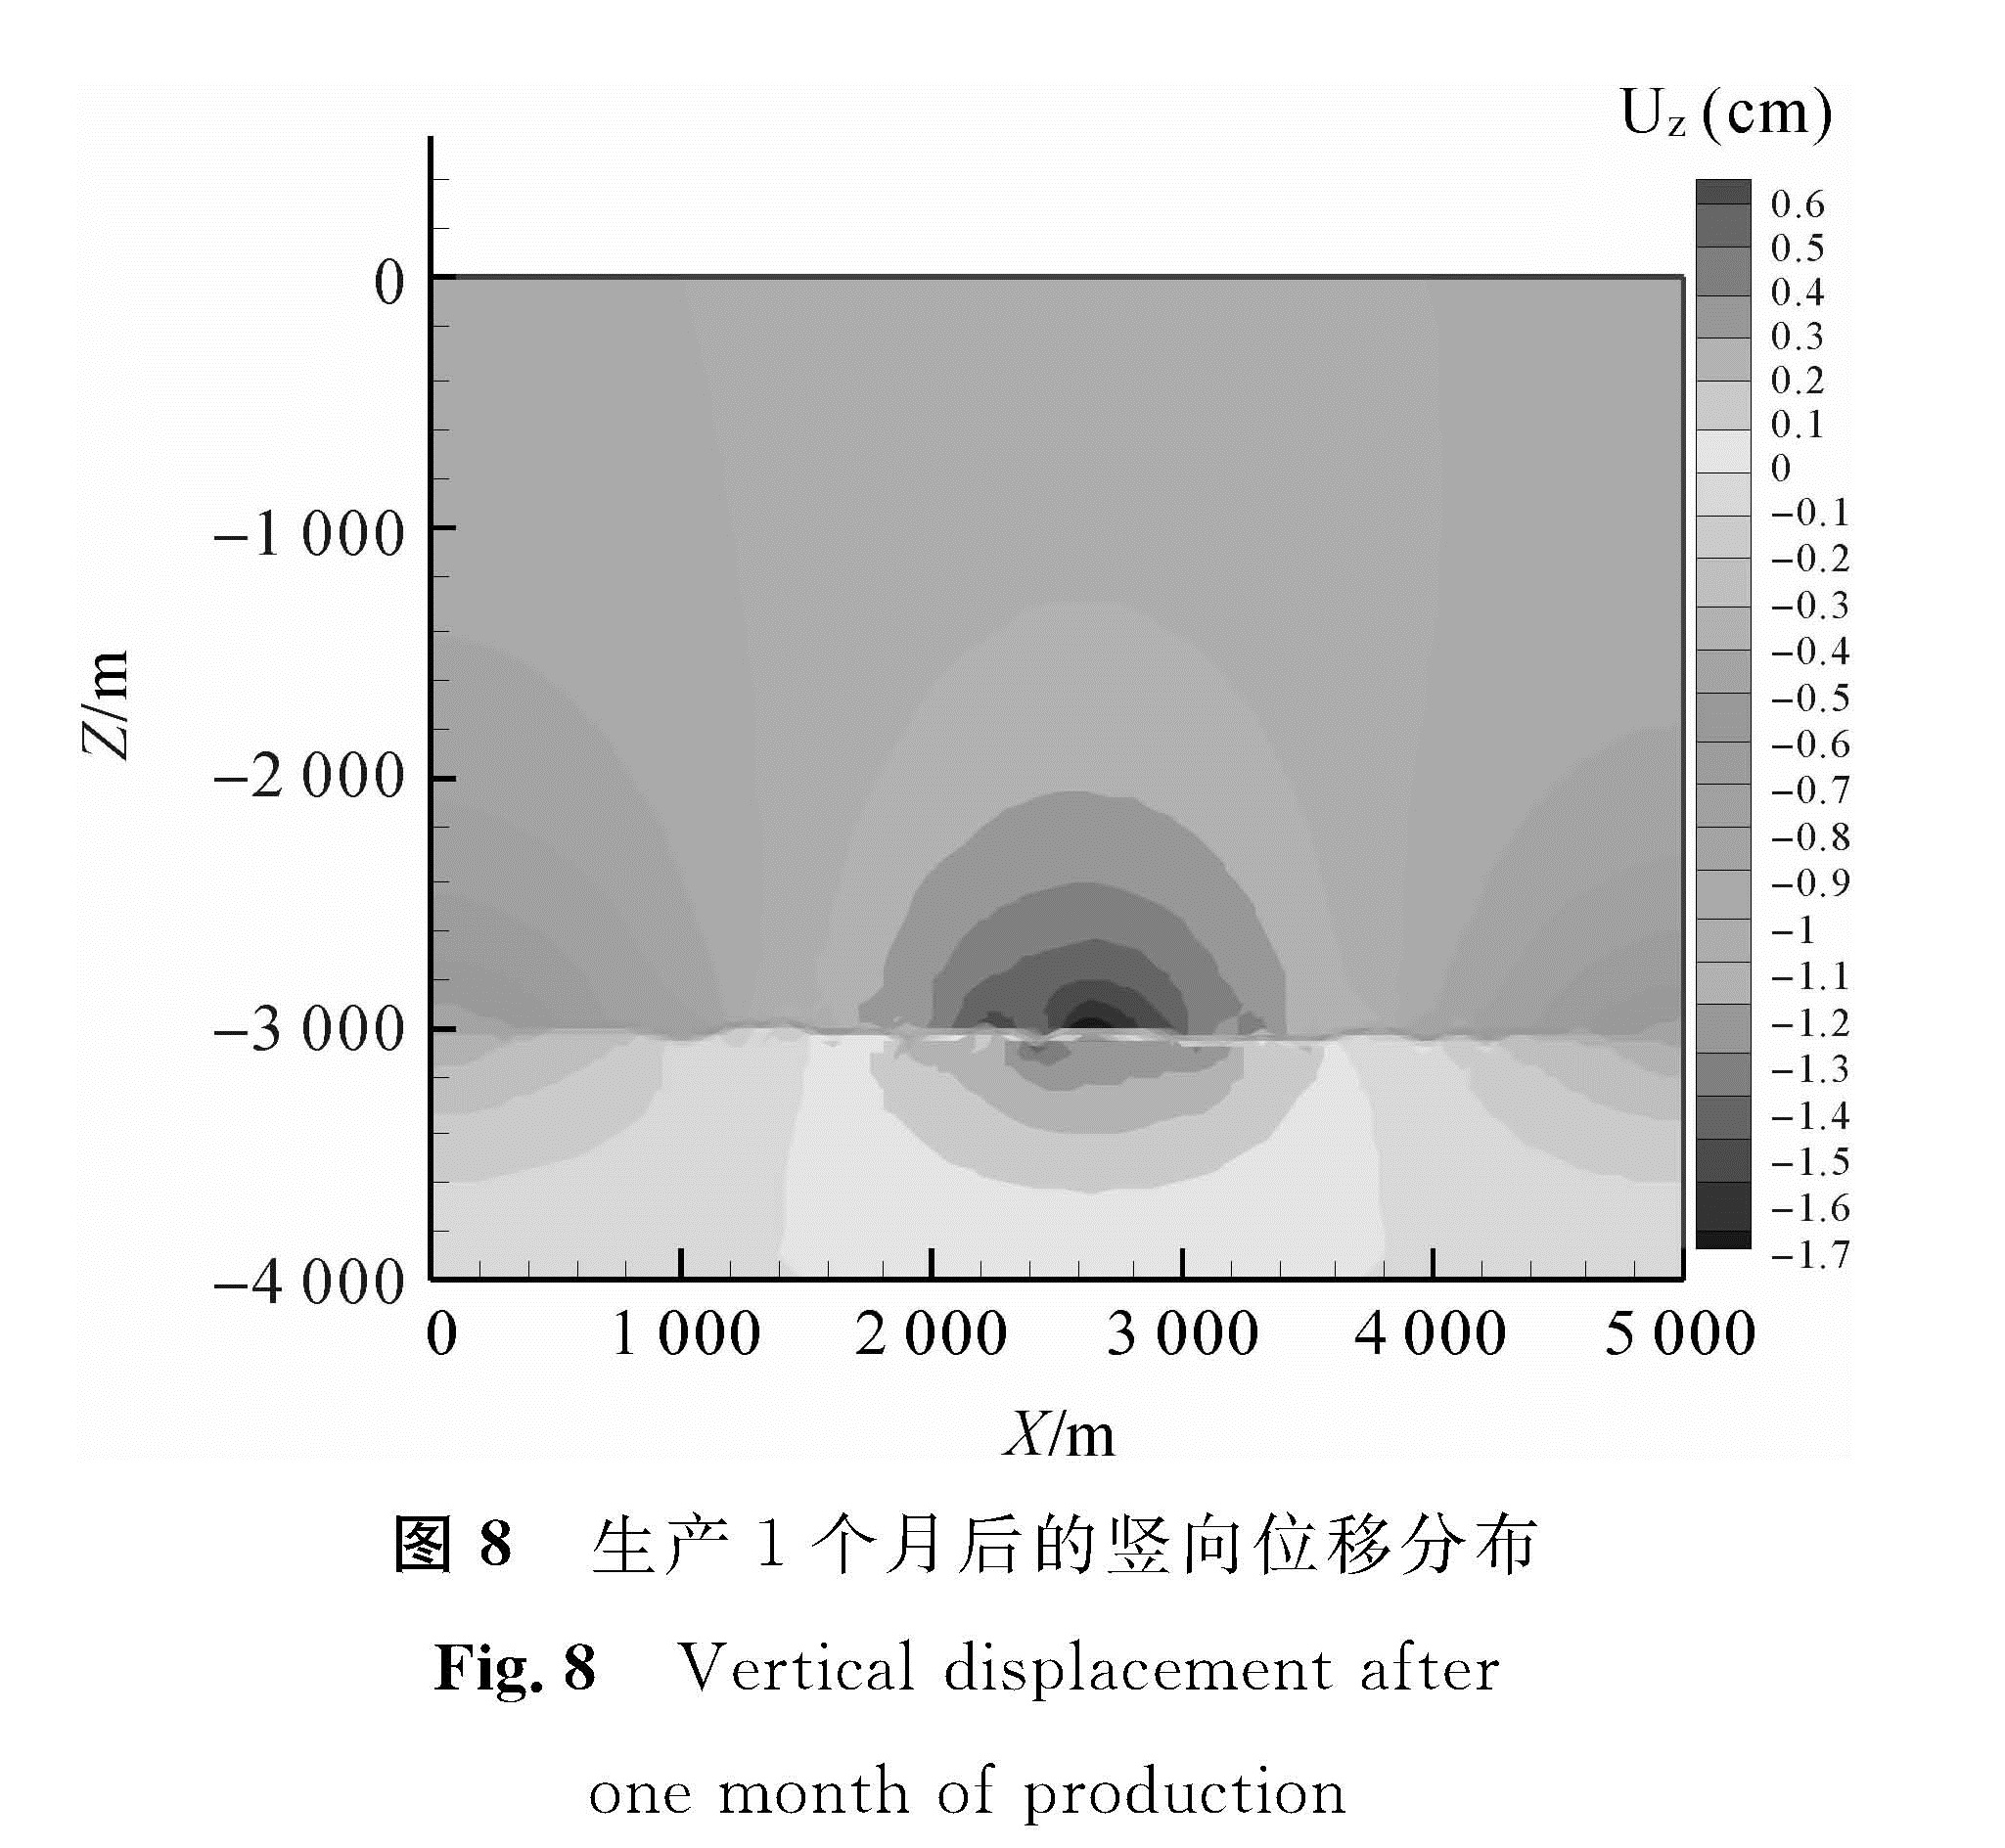 图8 生产1个月后的竖向位移分布<br/>Fig.8 Vertical displacement after one month of production